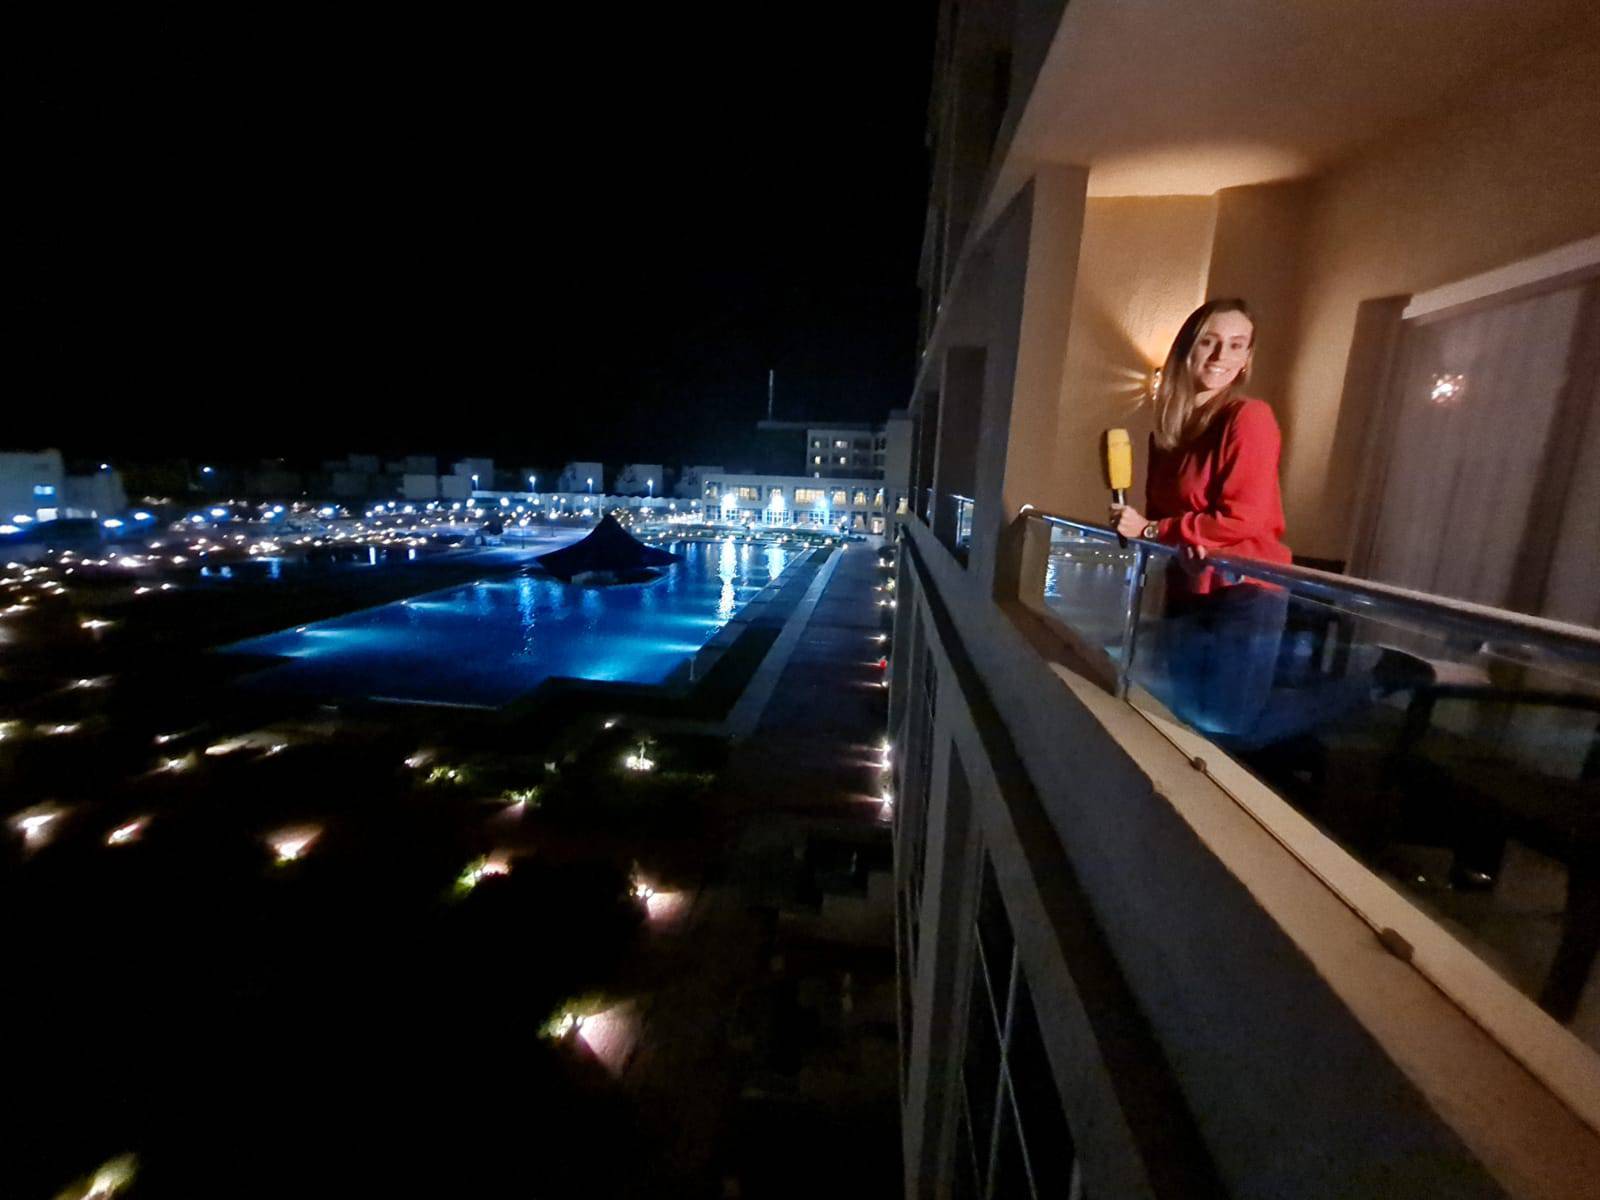 Ines Goda iz Egipta: Zbog mjera sam izvještavala s balkona sobe